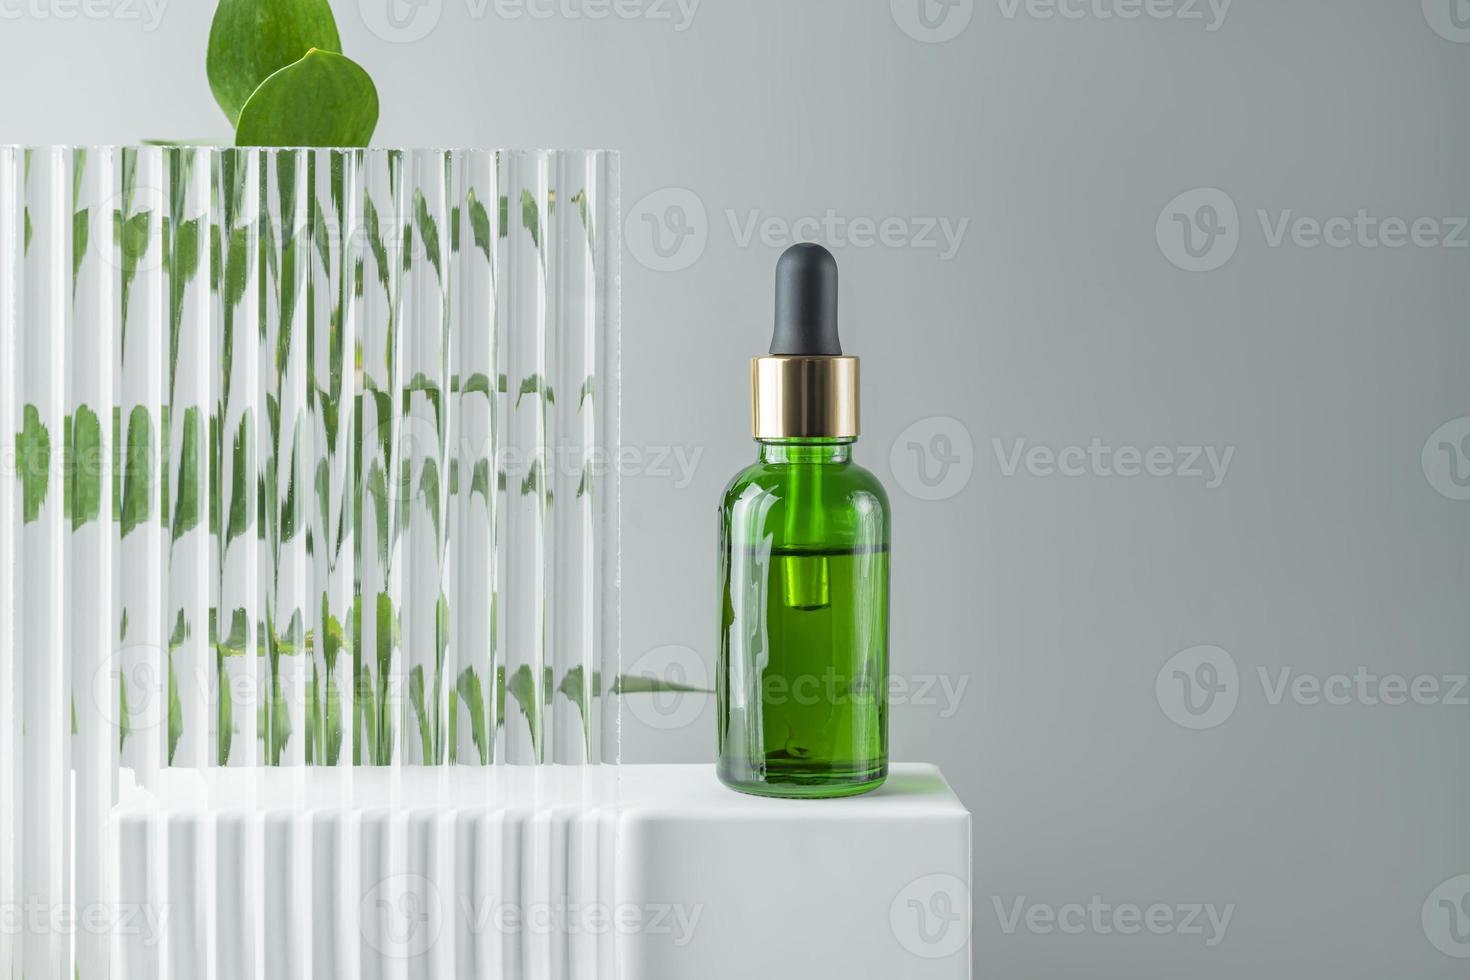 kunstmatig fles serum, olie Aan wit staan met groen Afdeling Aan grijs achtergrond. natuurlijk schoonheidsmiddelen concept, huid zorg Product. schoonheid concept voor gezicht lichaam zorg. mockup foto